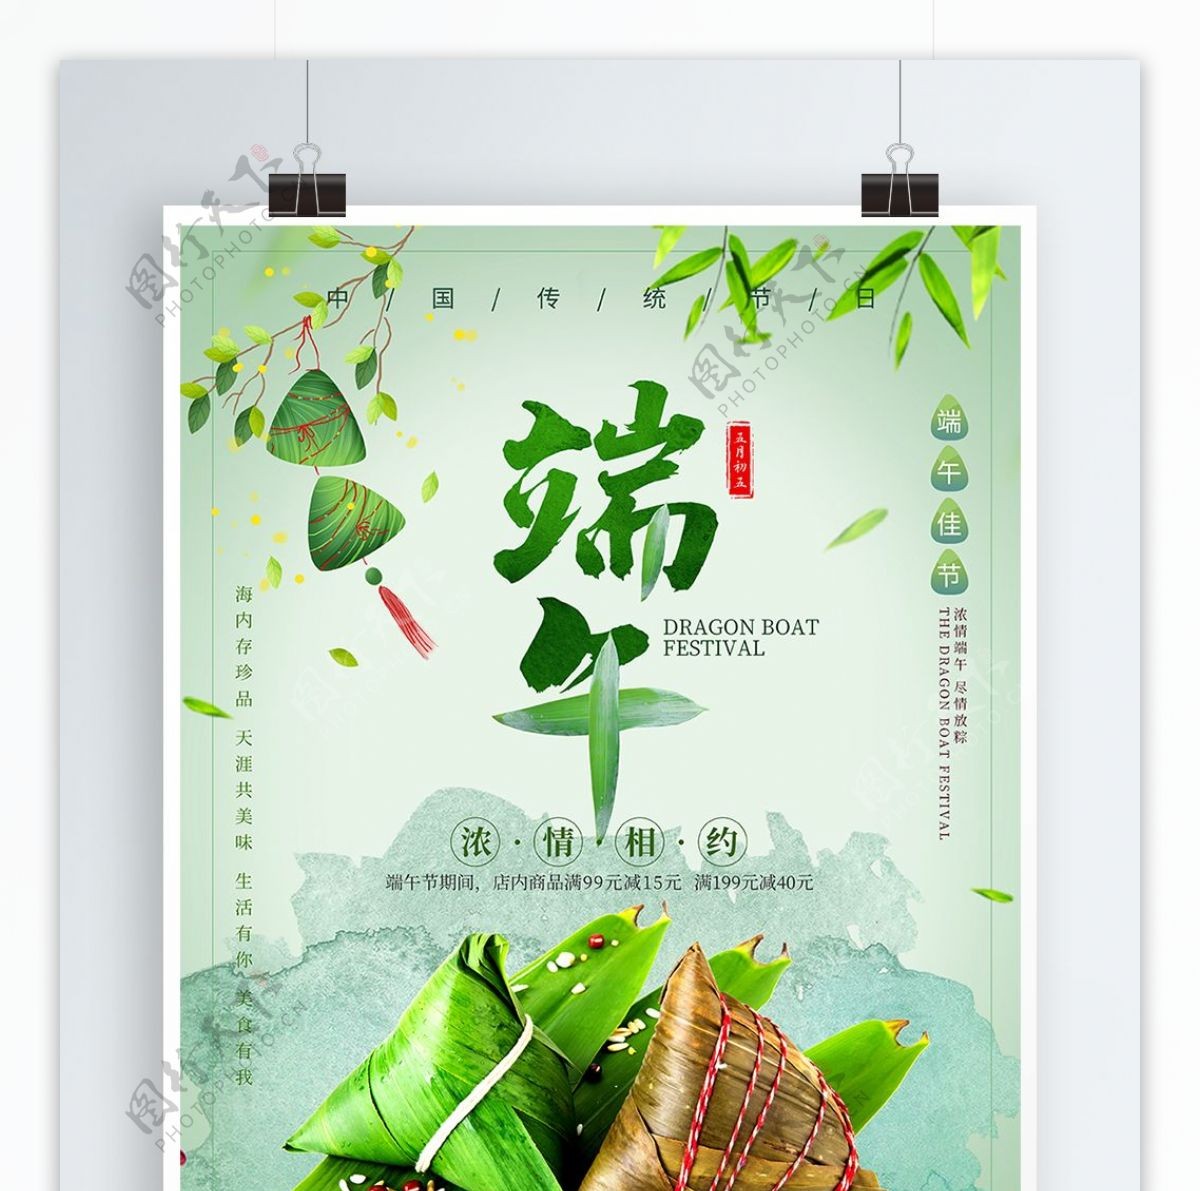 中国传统节日端午佳节浓情相约节日促销海报